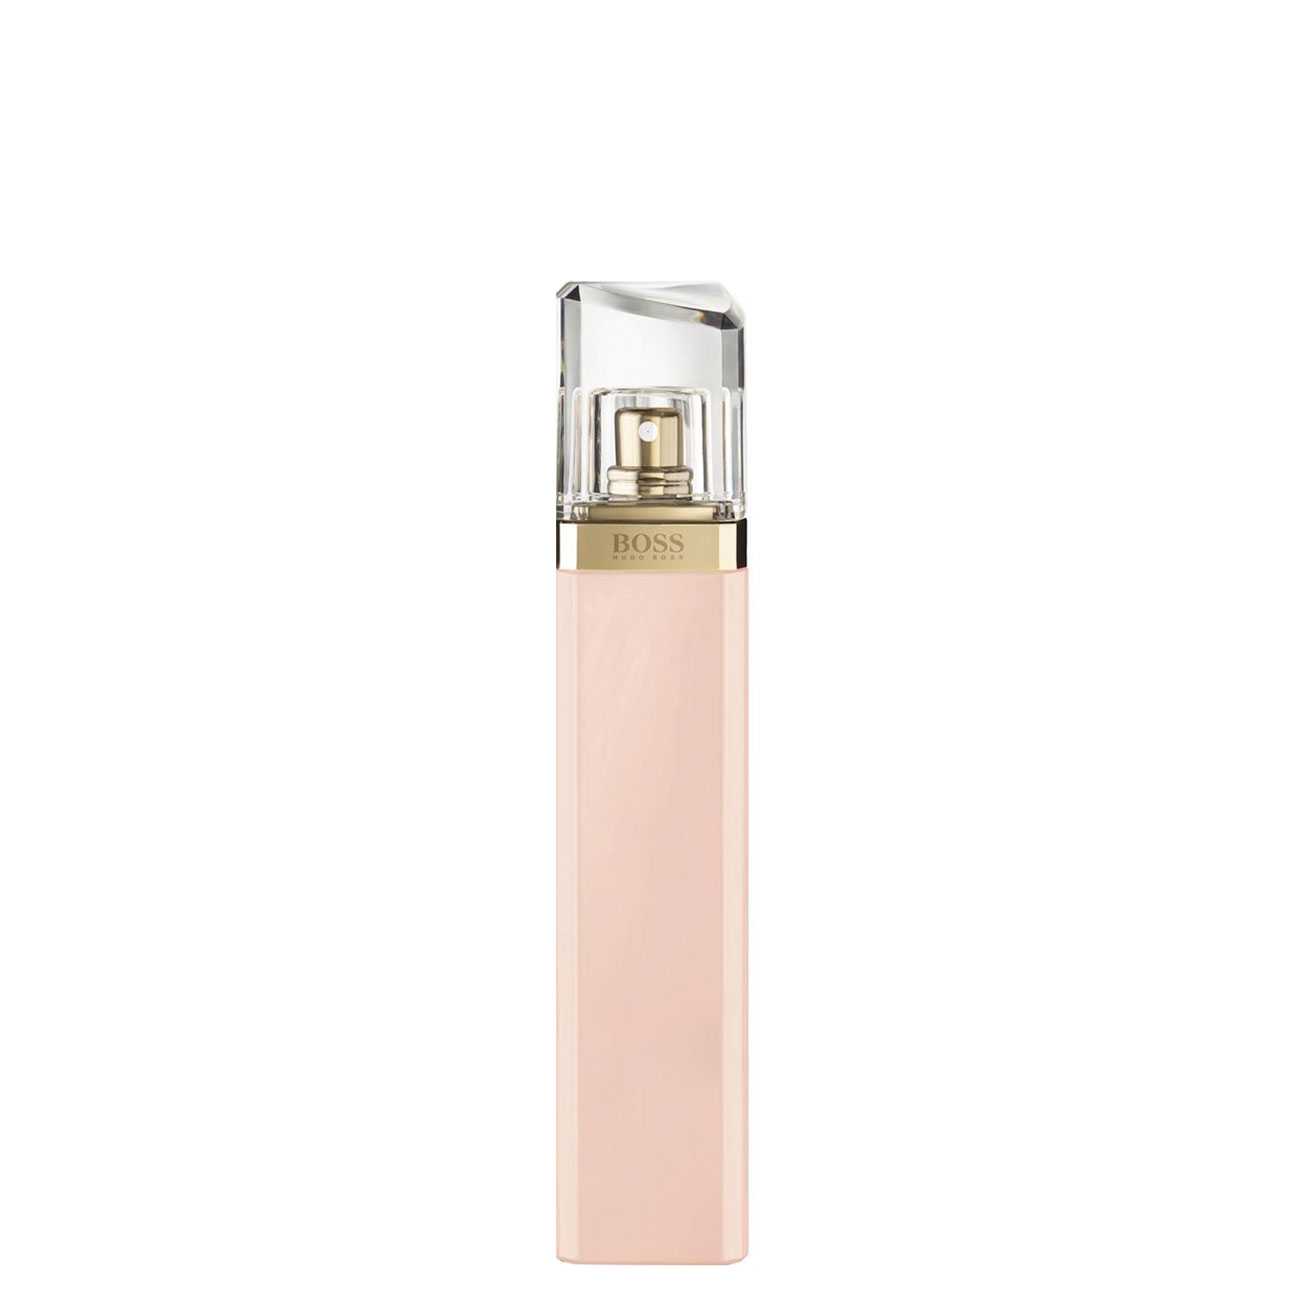 Apa de Parfum Hugo Boss MA VIE 75ml cu comanda online